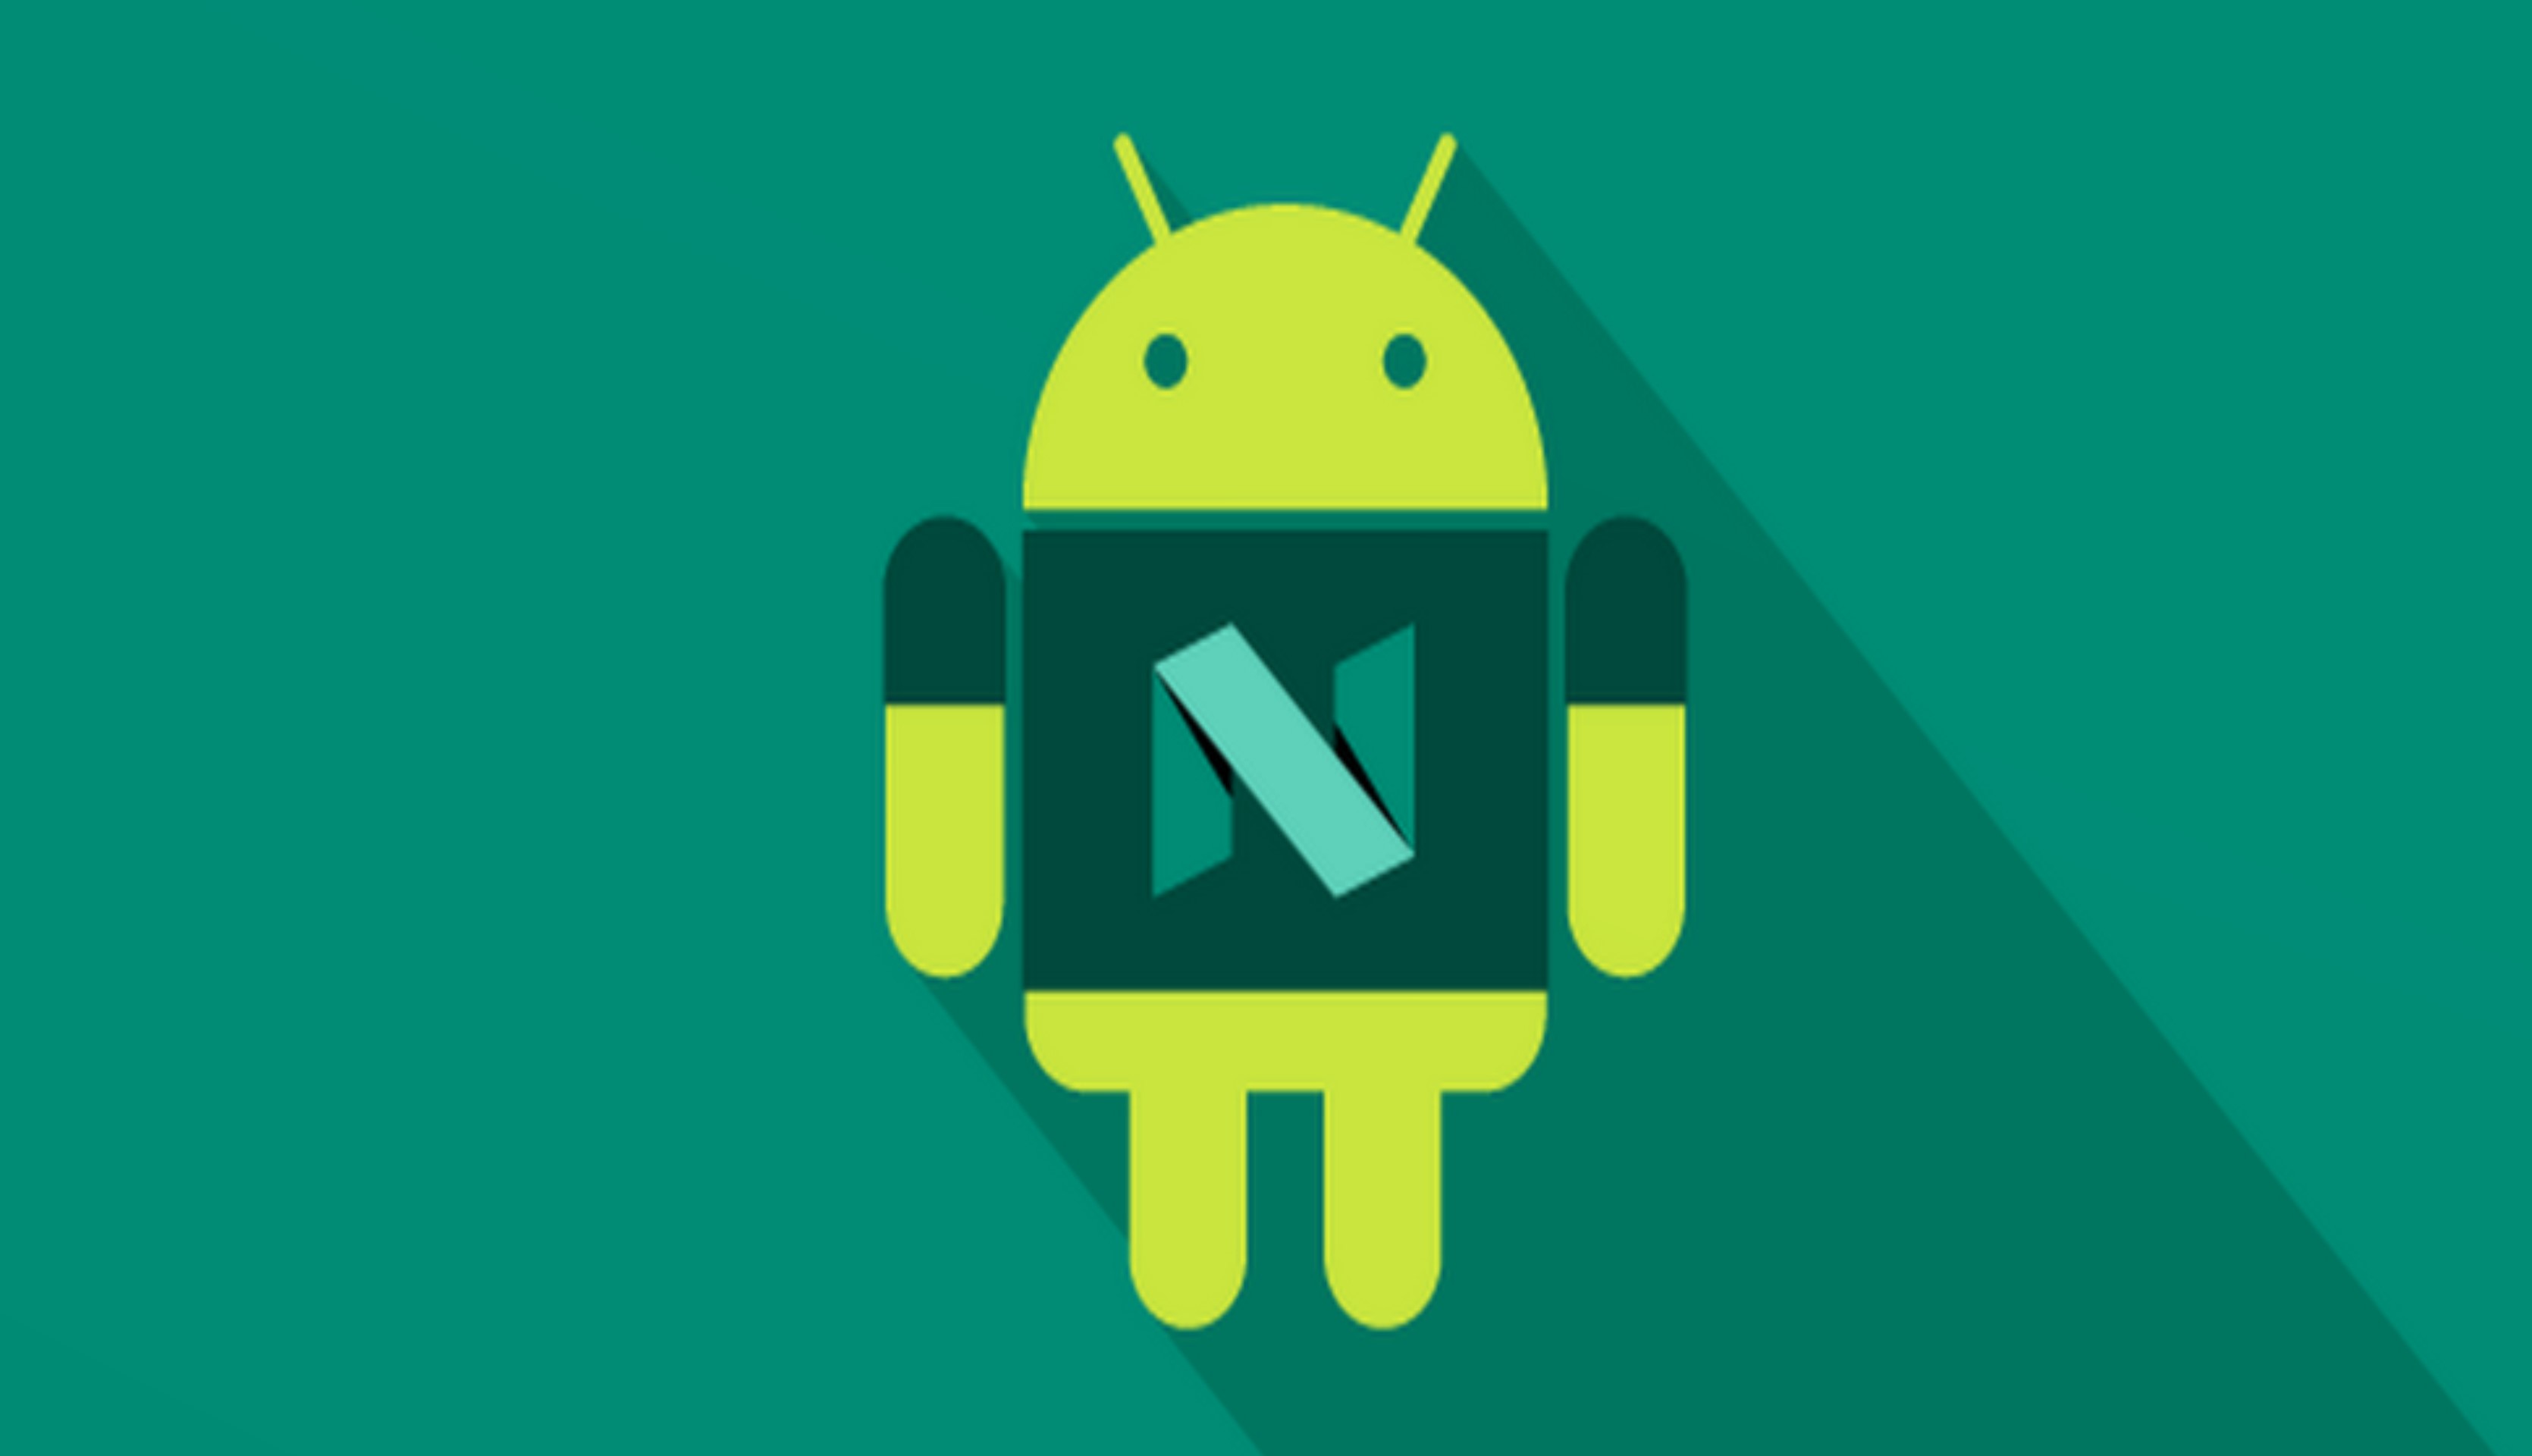 Galaxy C7 Pro İçin Android 7.0 Nougat Güncellemesi Yayınlandı